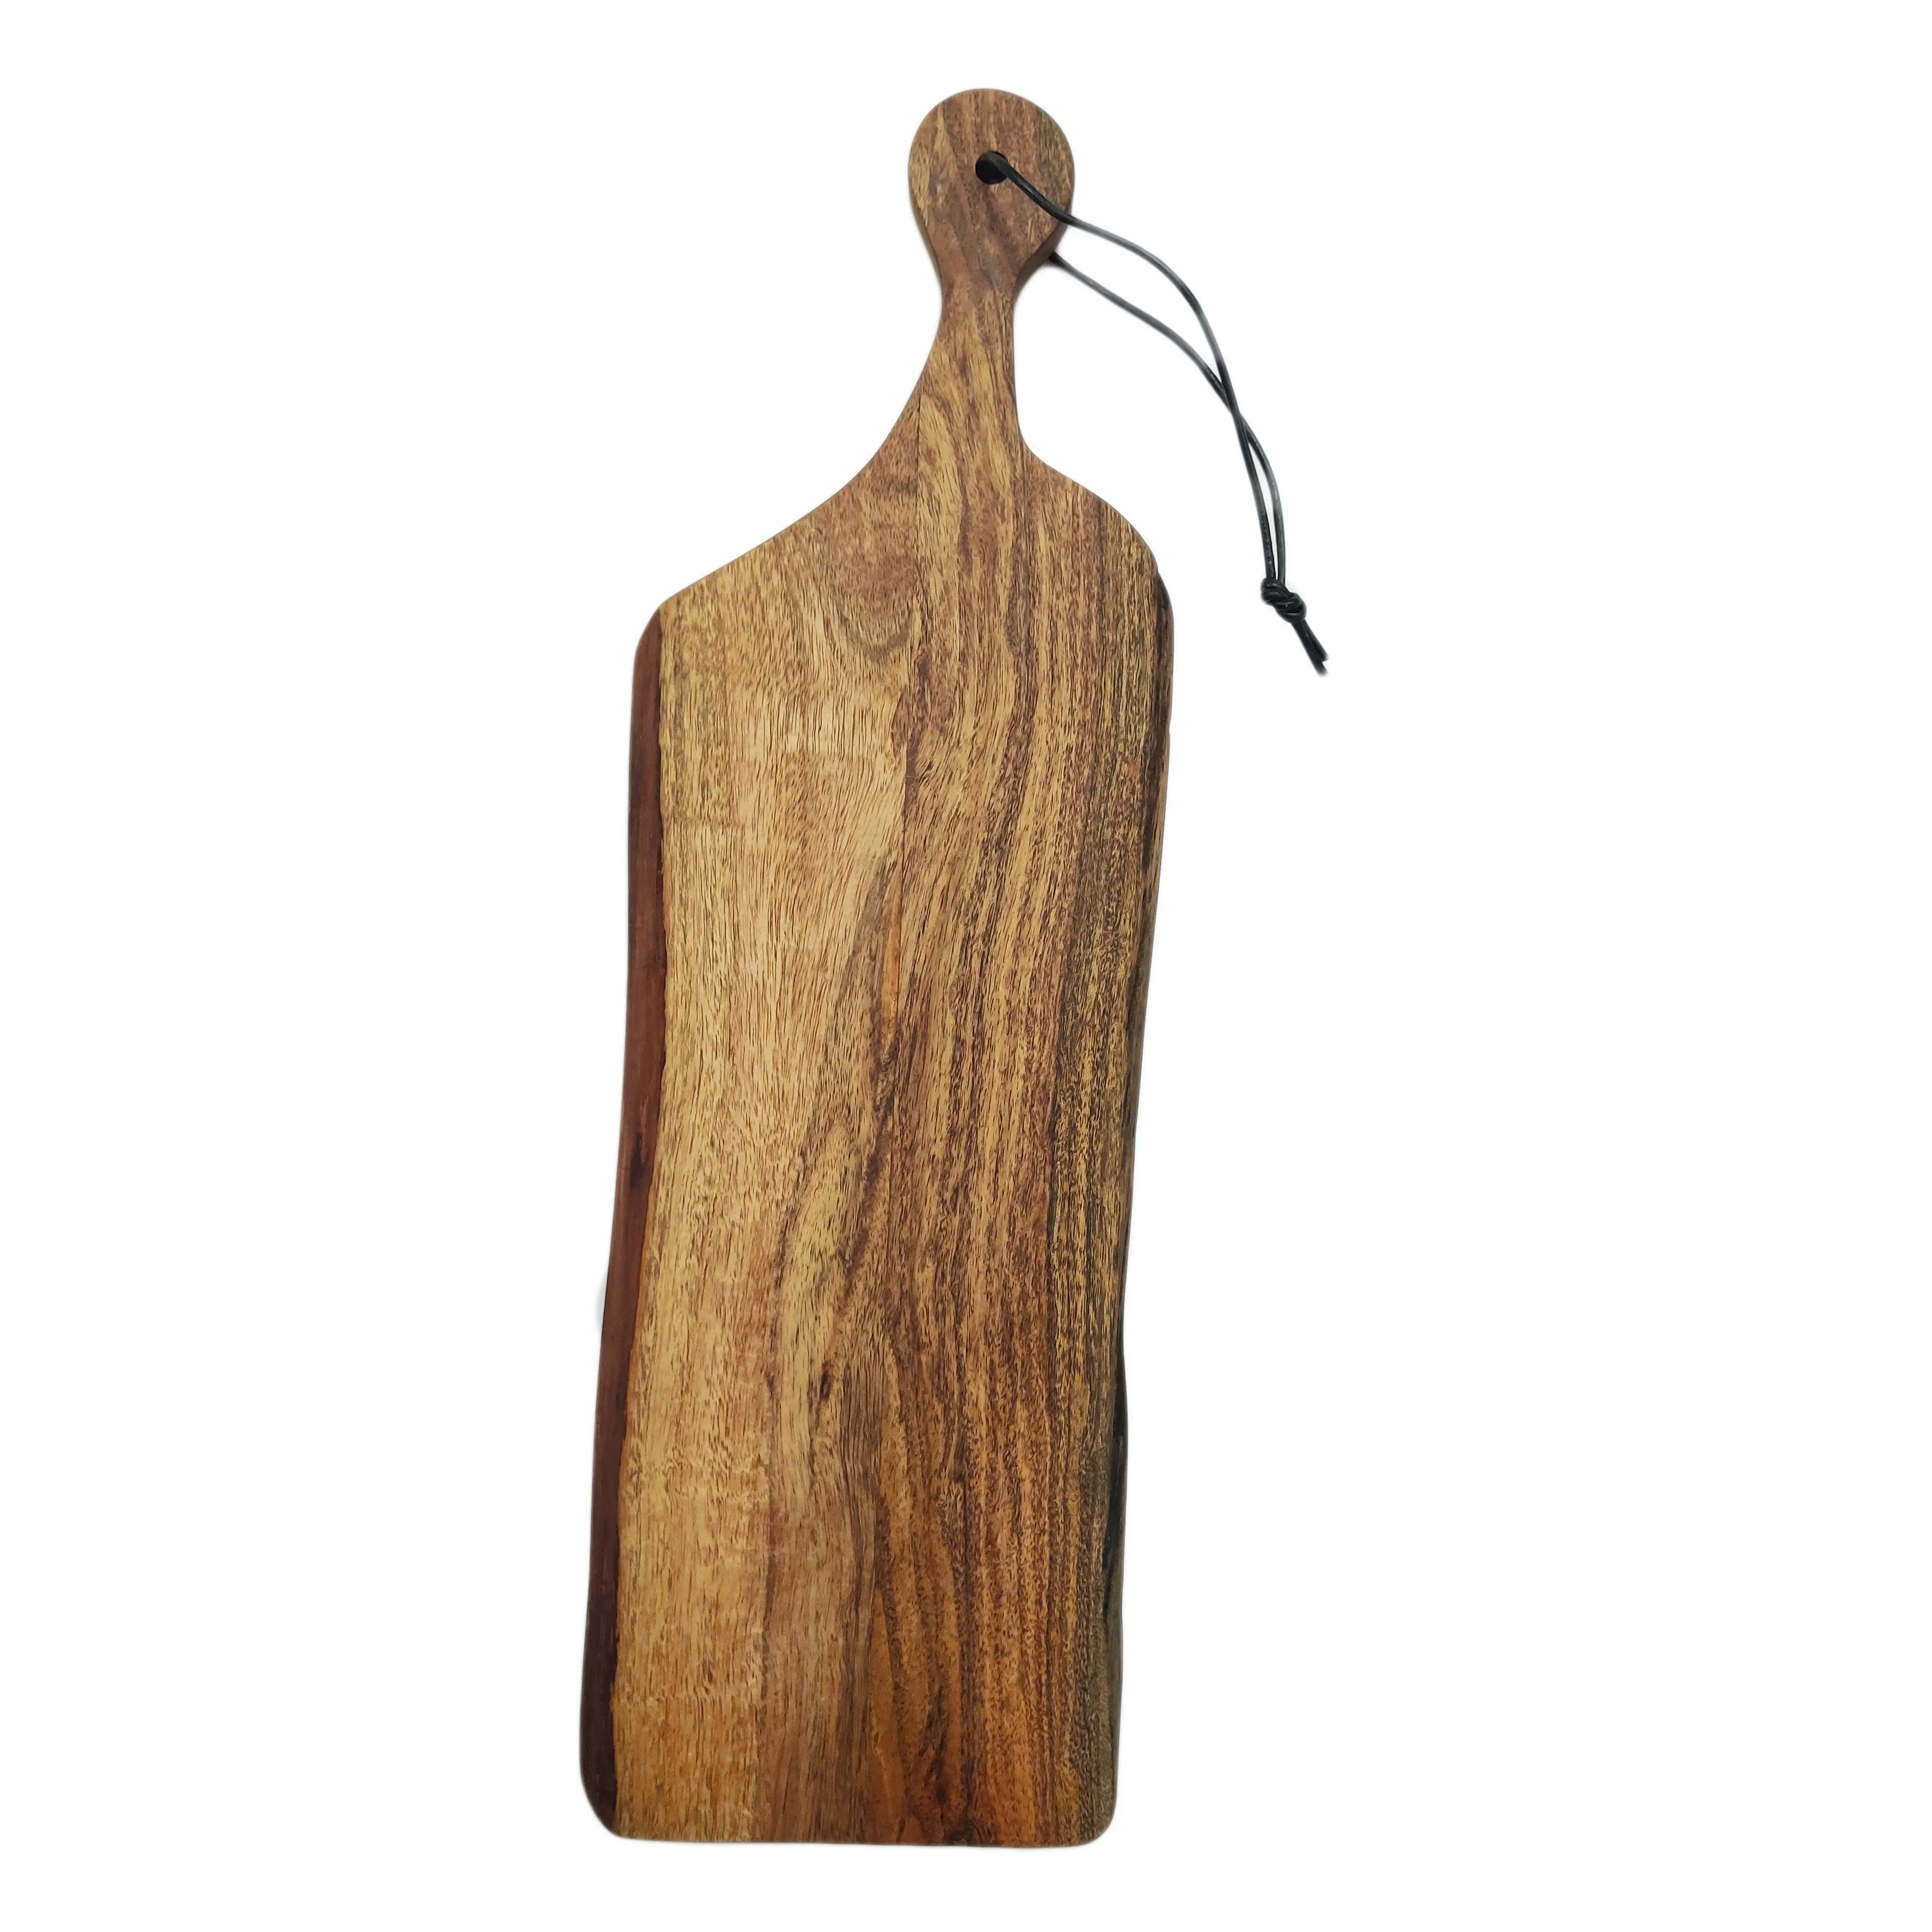 बबूल की लकड़ी काट बोर्ड रसोई के उपयोग के लिए संभाल के साथ आयत आकार दस्तकारी तेल से सना हुआ खत्म दीवार फांसी लकड़ी काटने बोर्ड